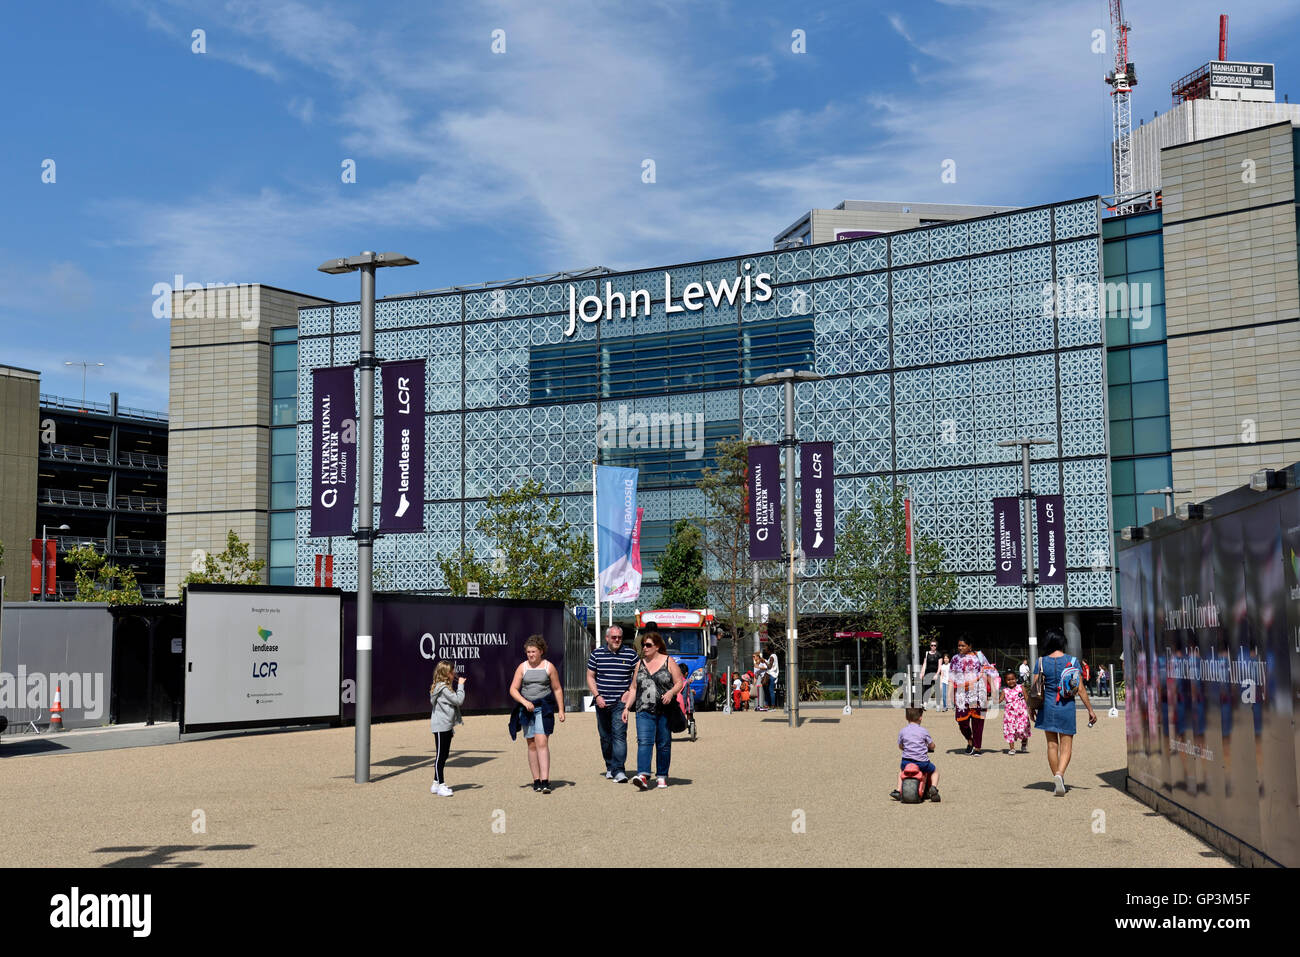 La gente almacenes John Lewis visto desde la parte trasera, con la gente caminando en la parte delantera, el centro comercial Westfield Stratford City de Londres, Inglaterra, Reino Unido de Gran Bretaña Foto de stock